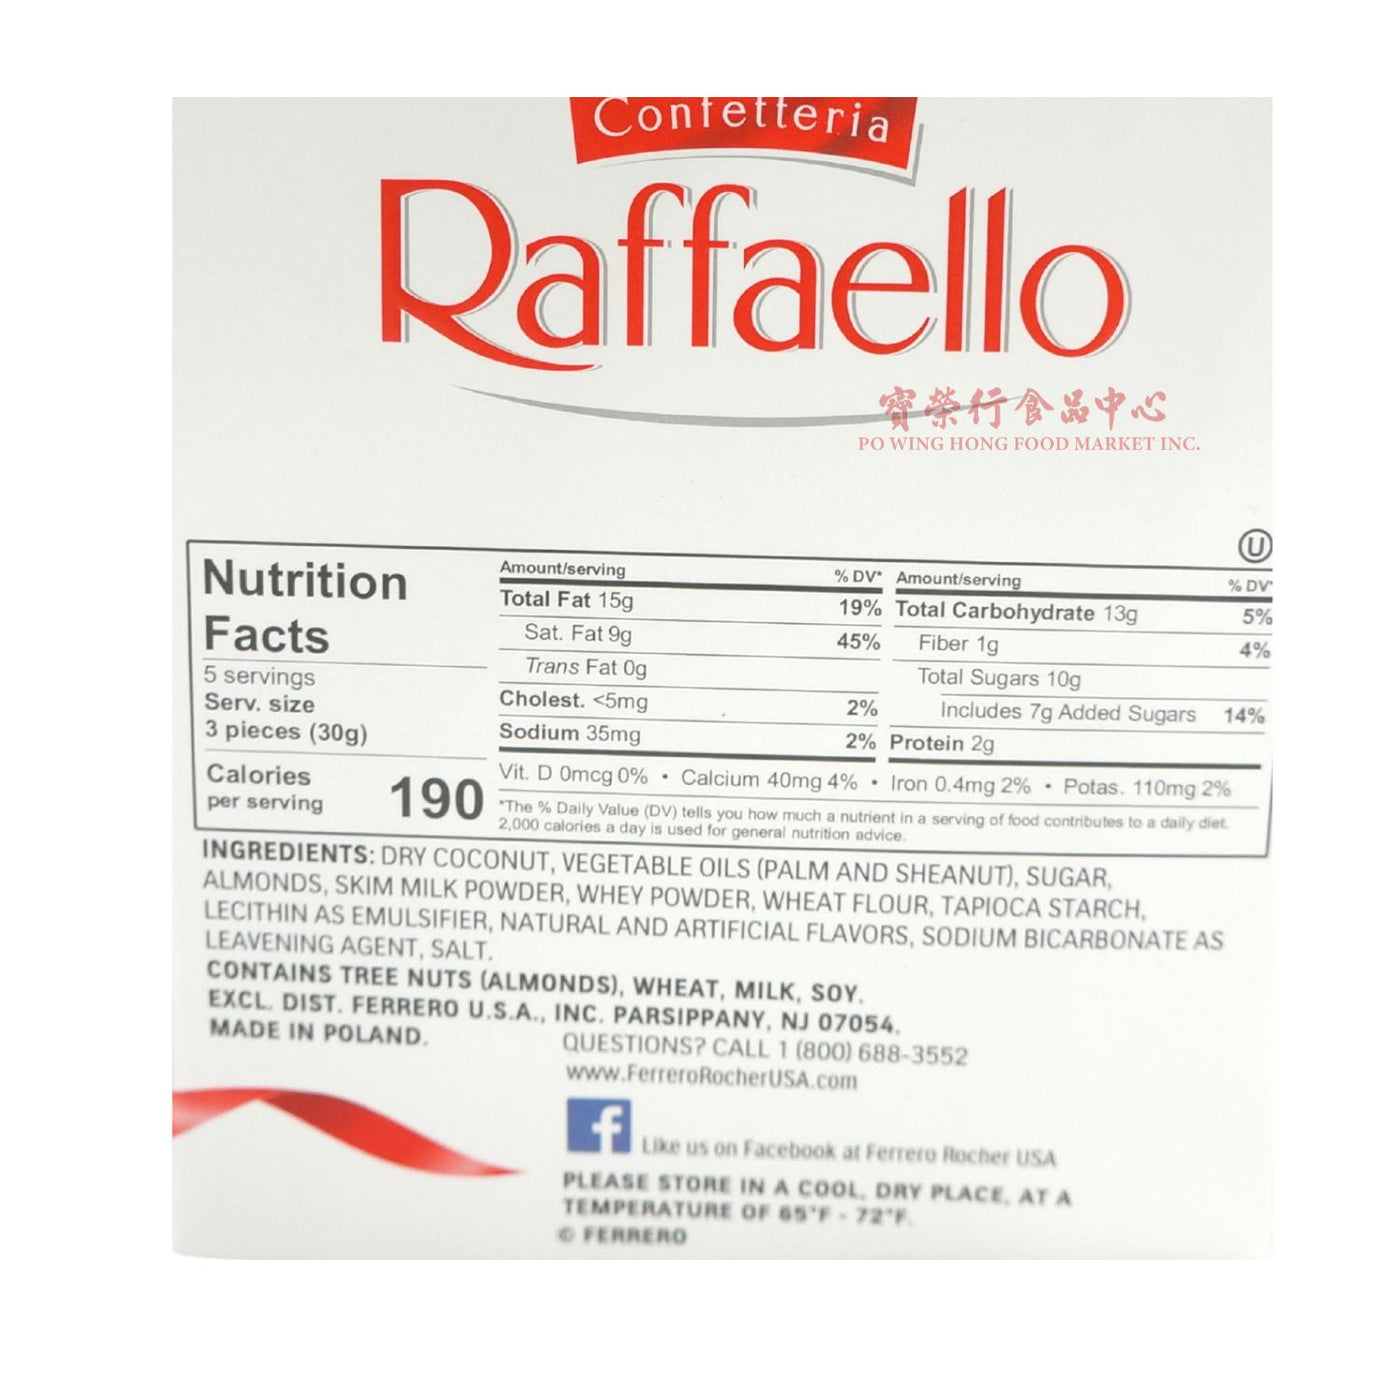 Product “Ferrero - Raffaello”